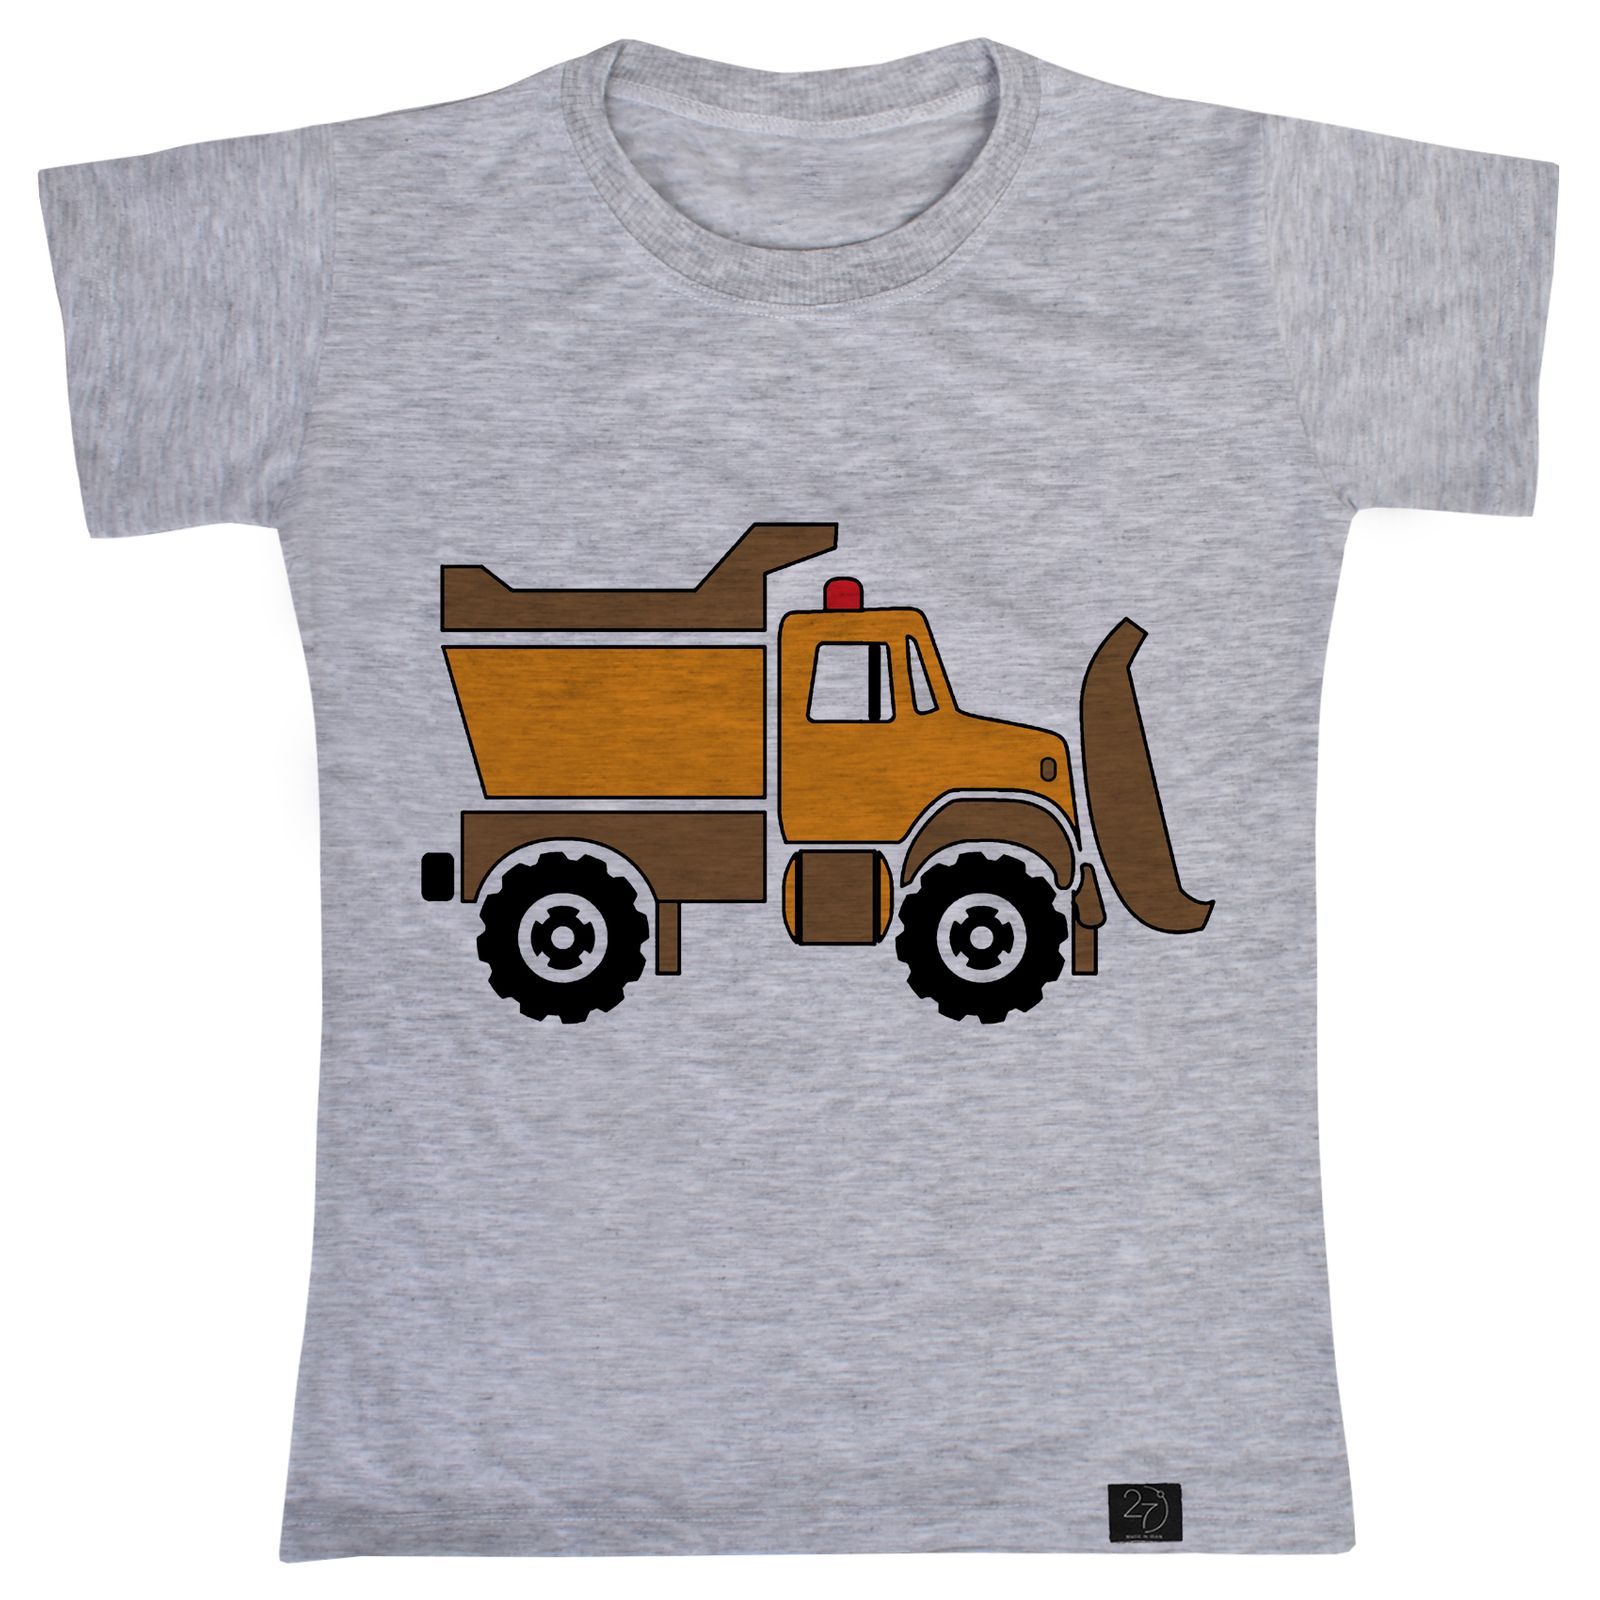 تی شرت پسرانه 27 مدل کامیون کد T57